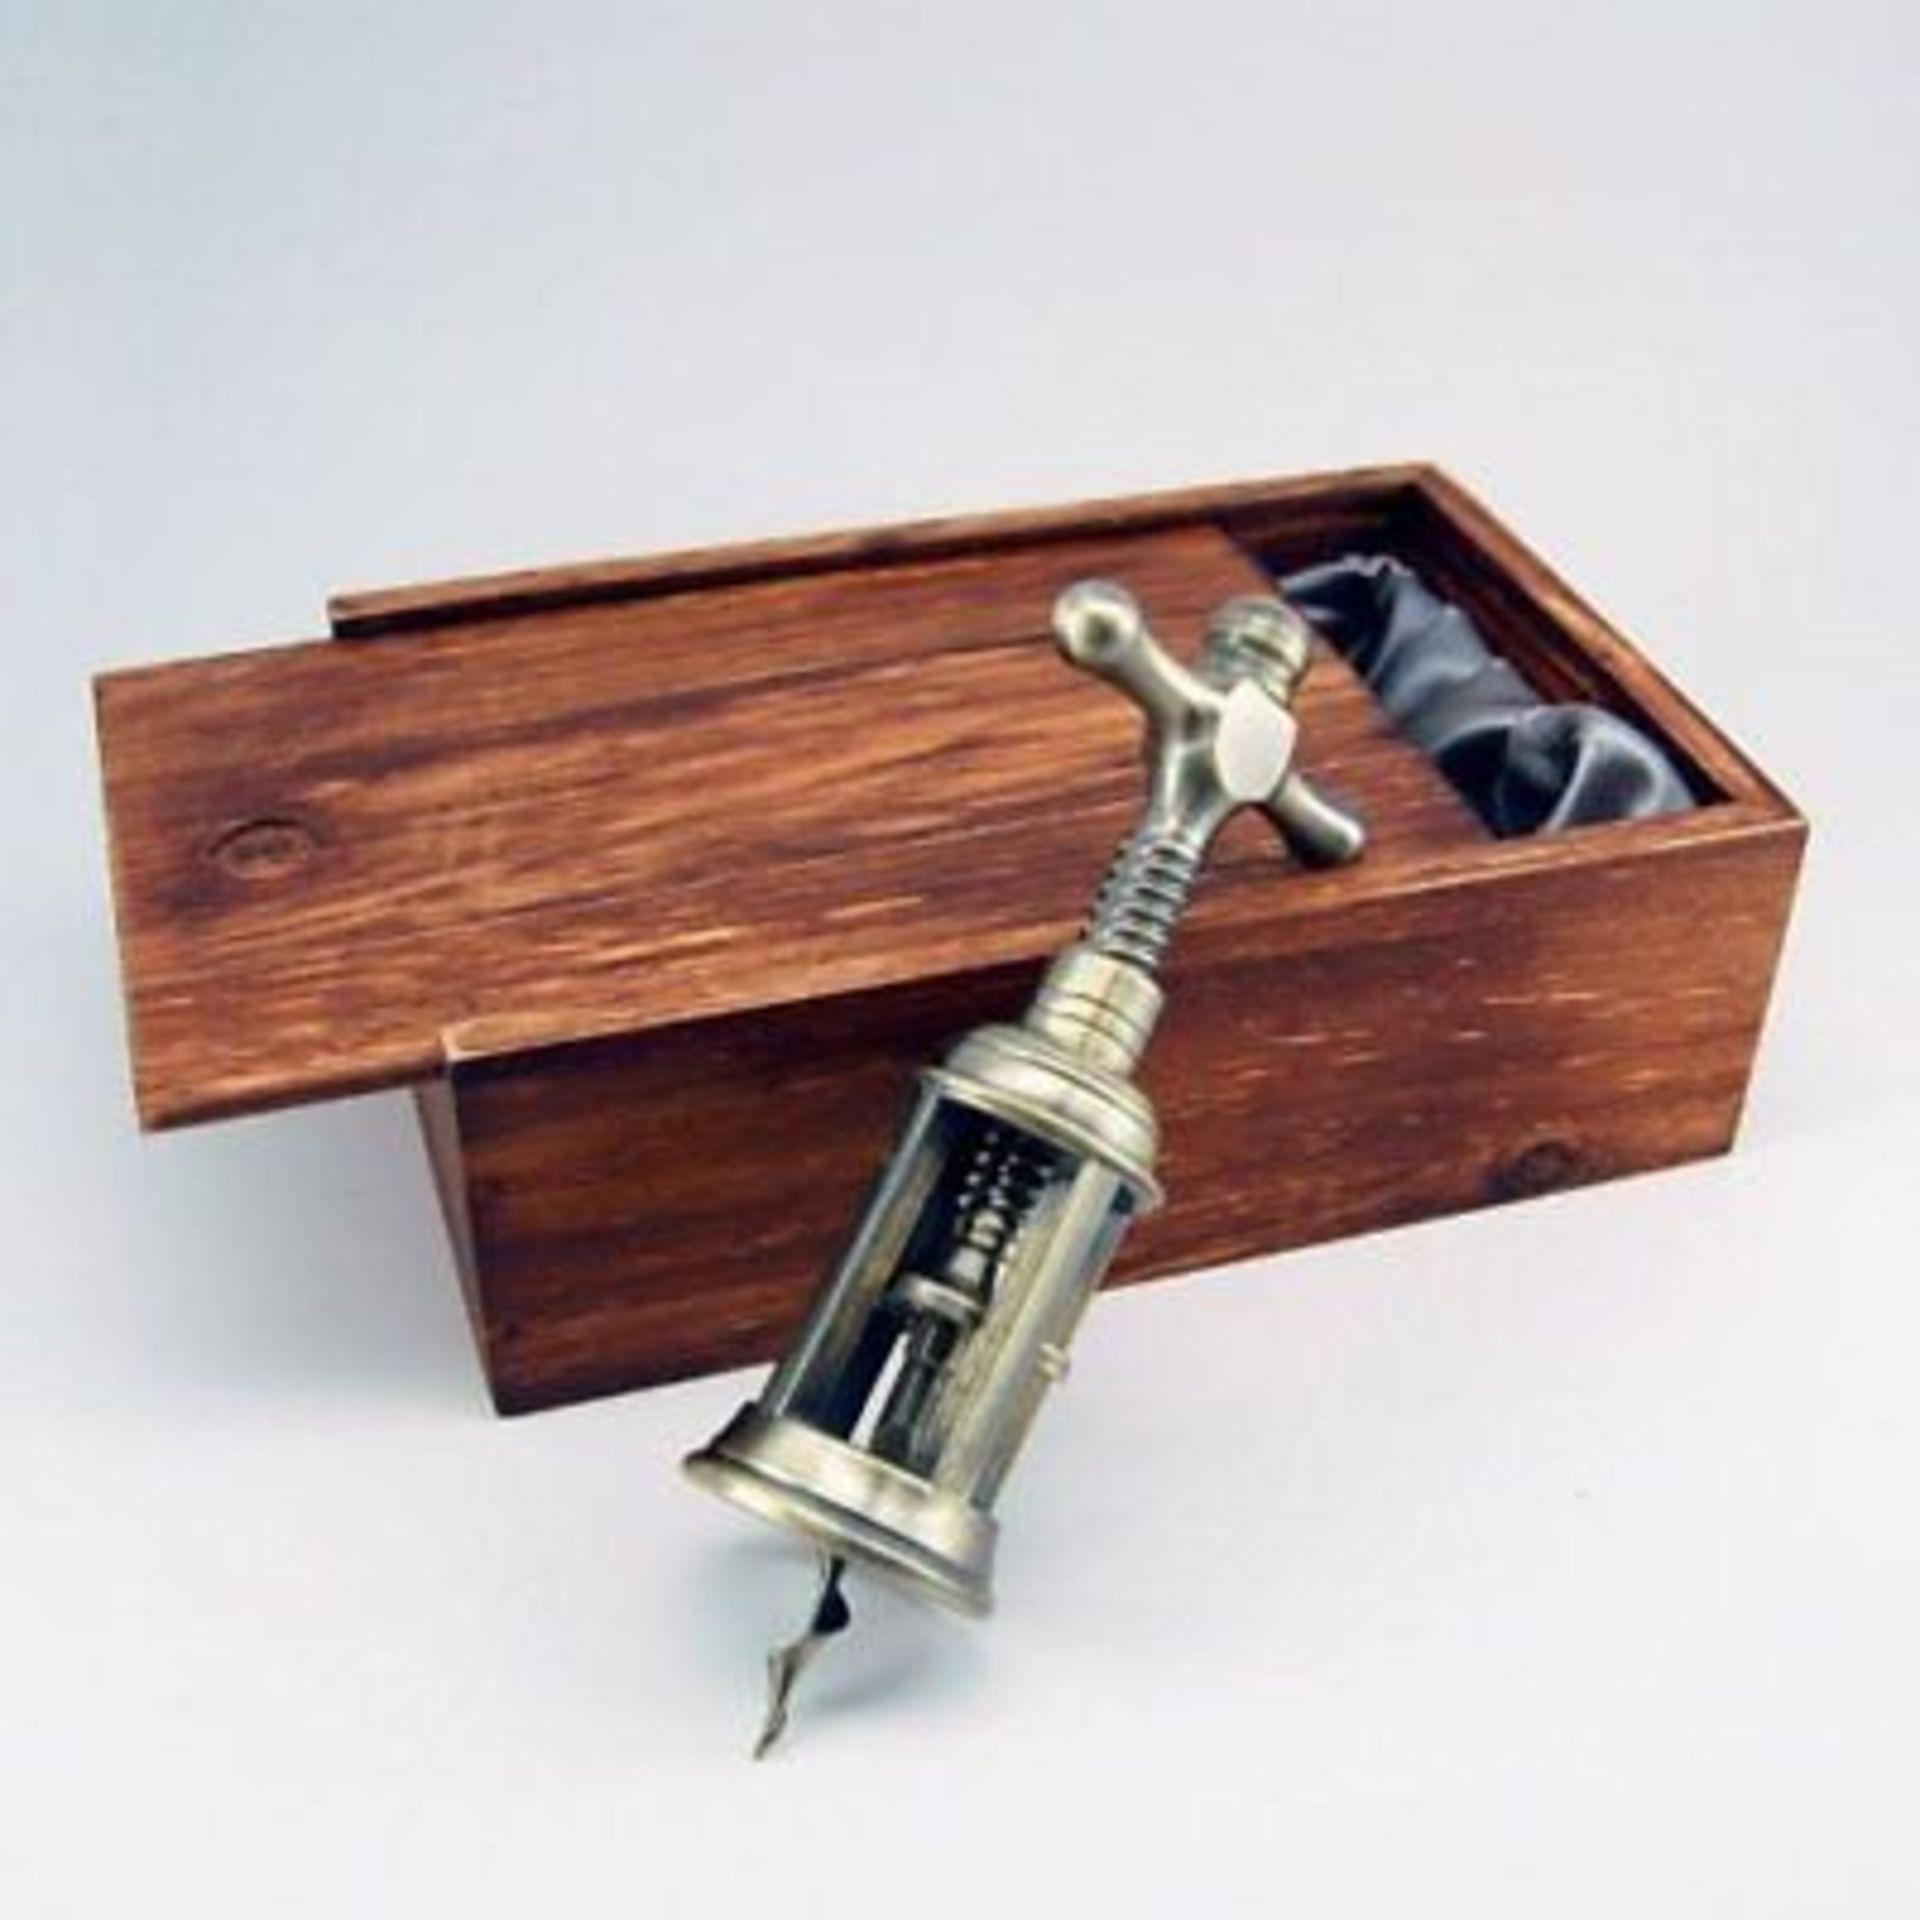 V Brand New Presentation Corkscrew Brass Finish in wooden Box 17cm -Nice Gift ! ISP 20.99 Euros (